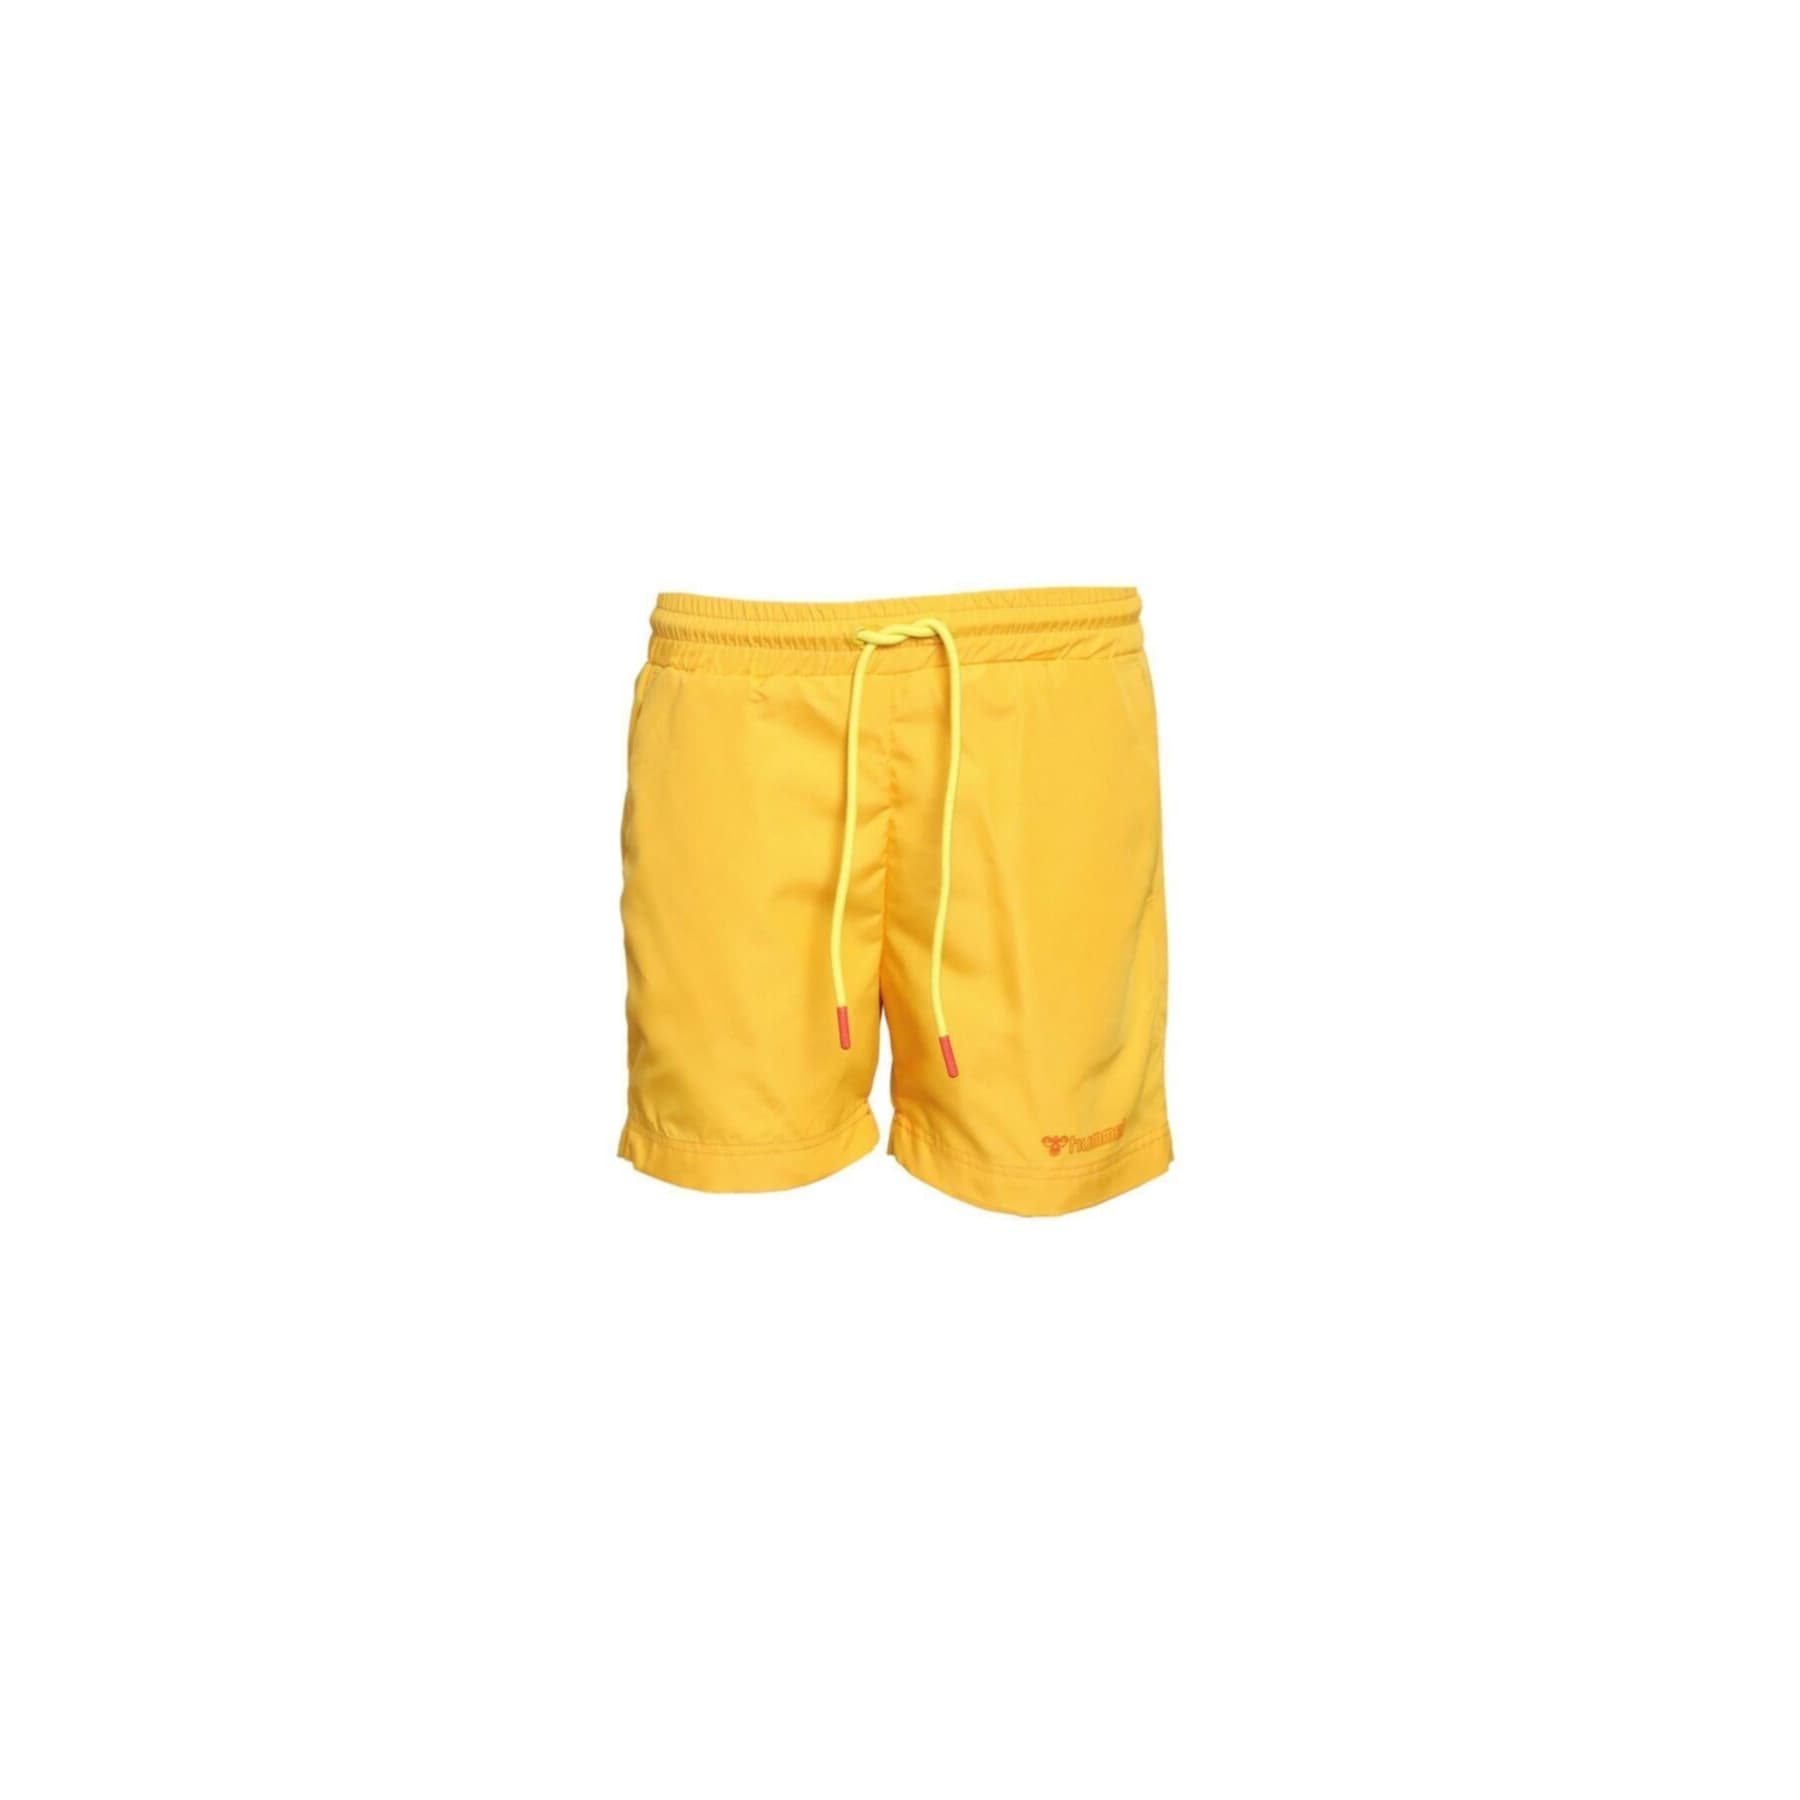 Crook Çocuk Sarı Yüzme Şortu (950042-5102)